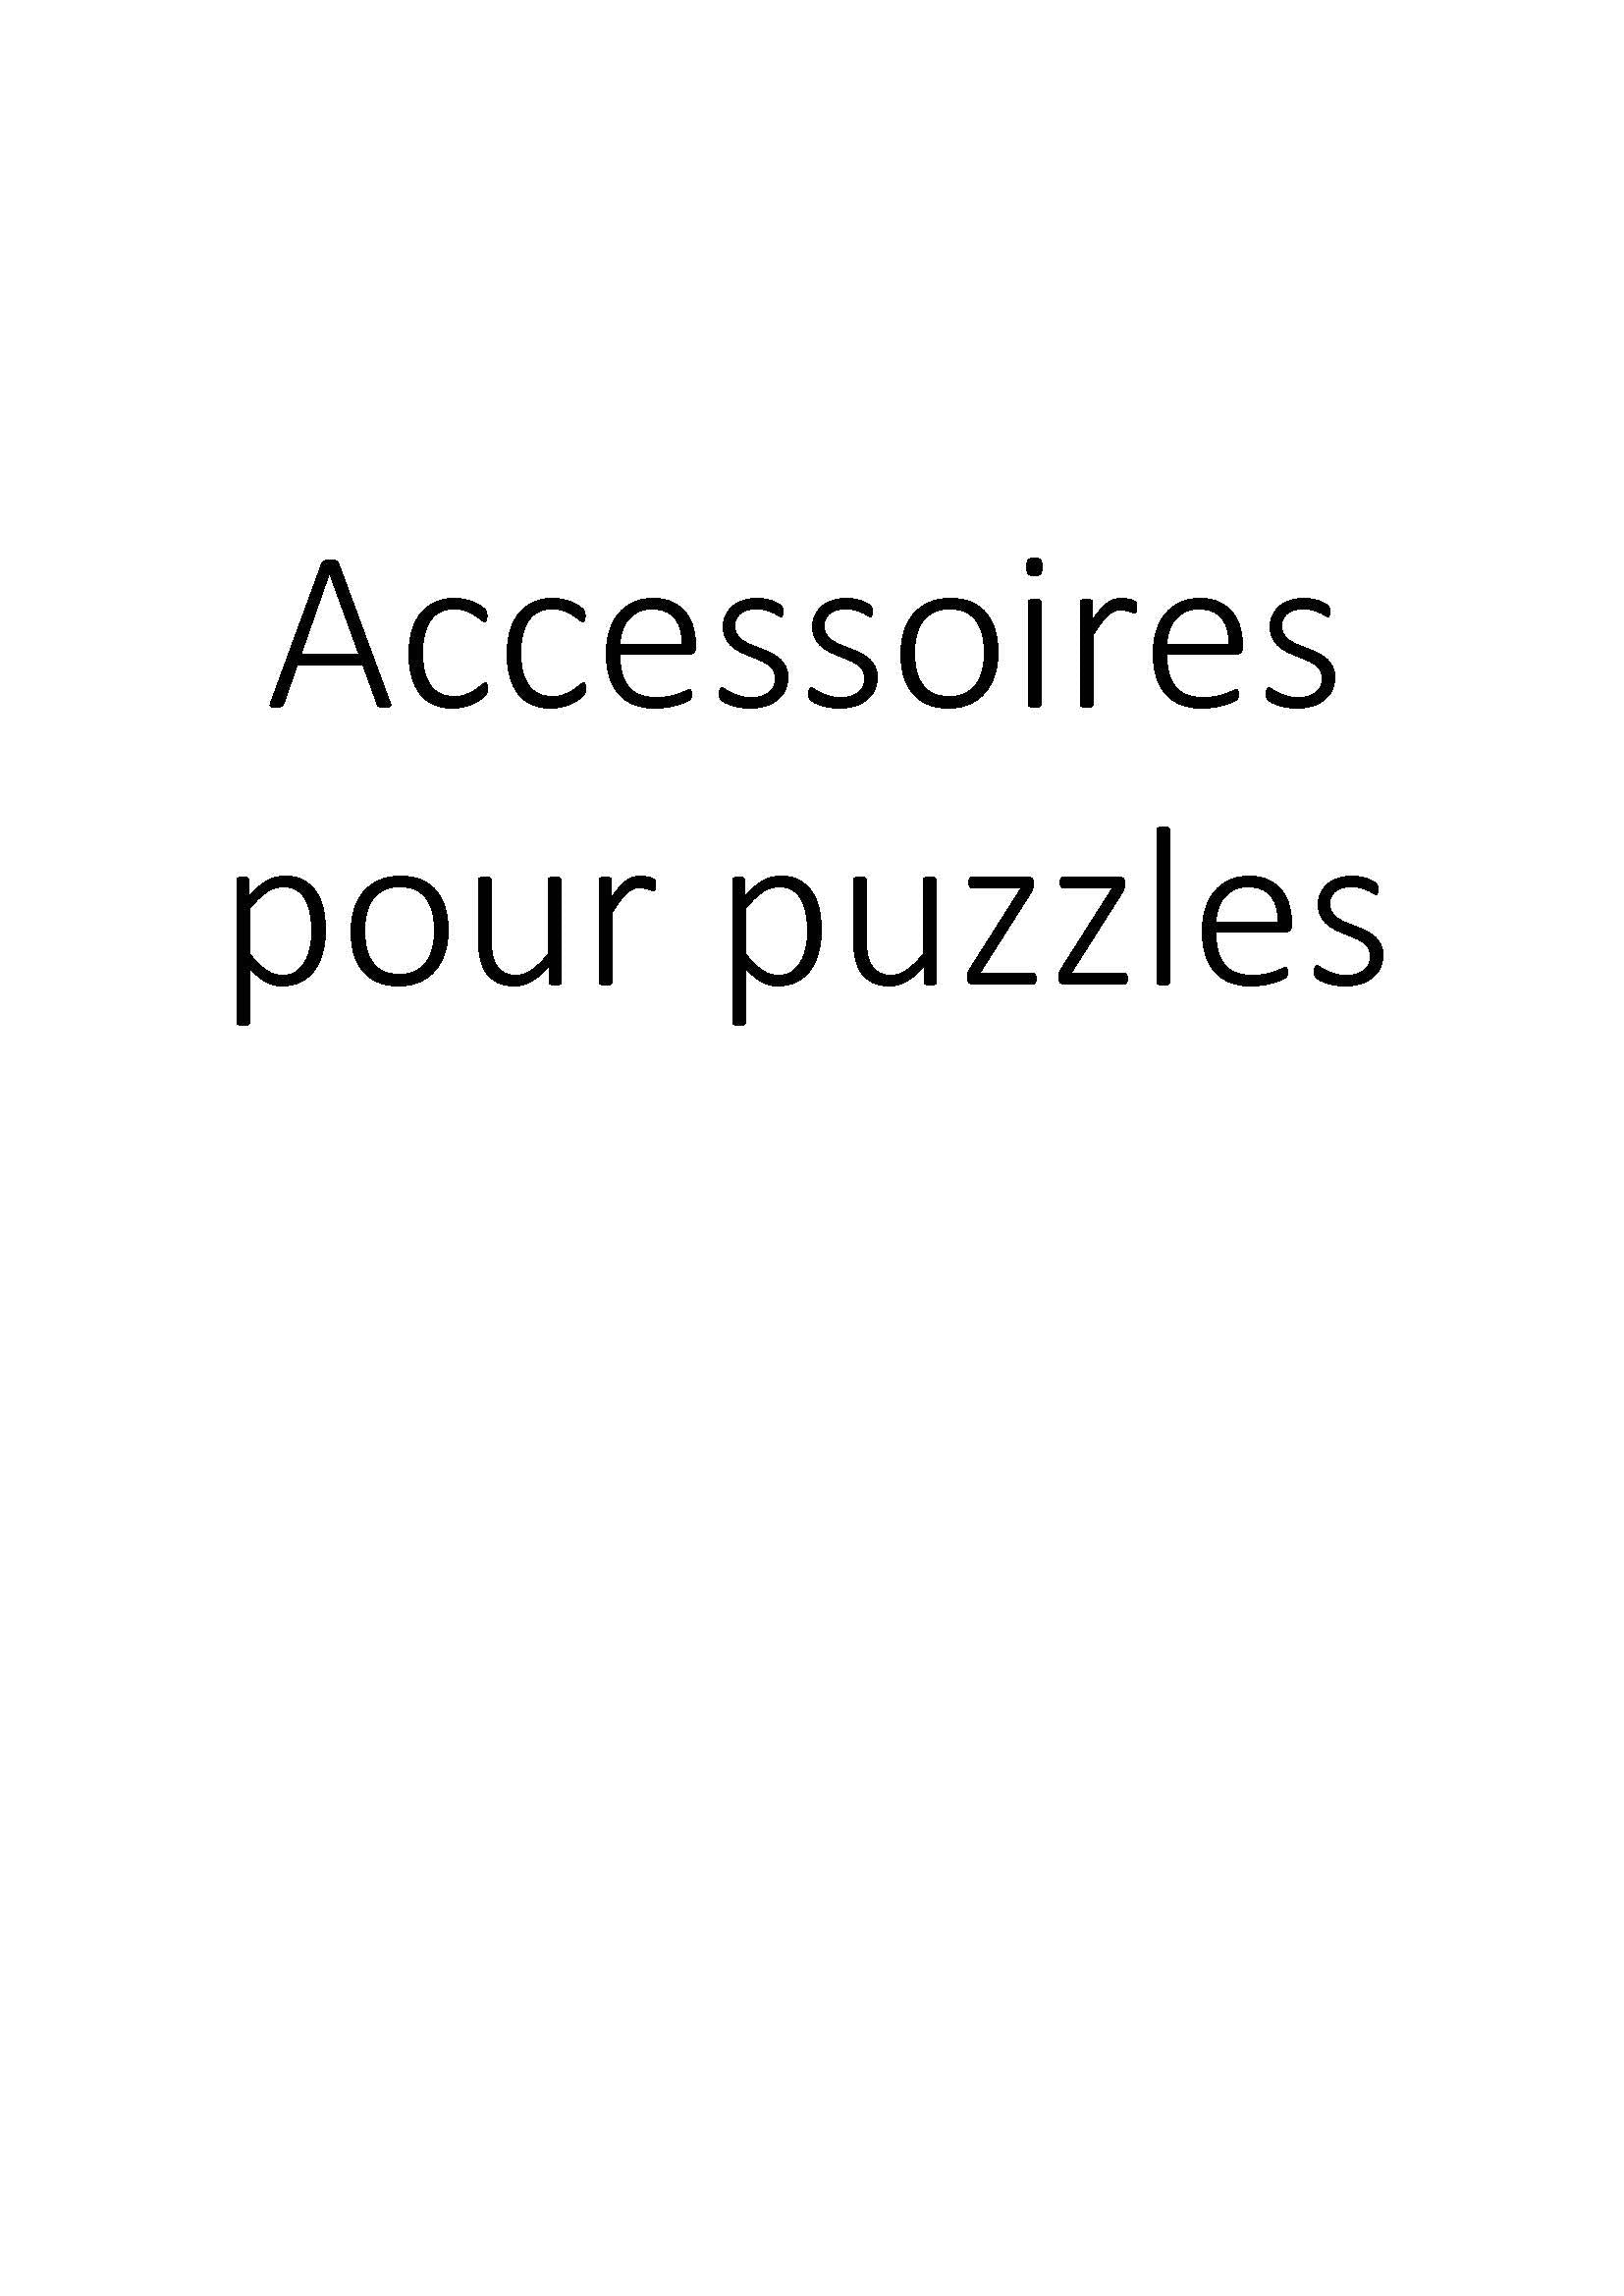 Accessoires pour puzzles clicktofournisseur.com